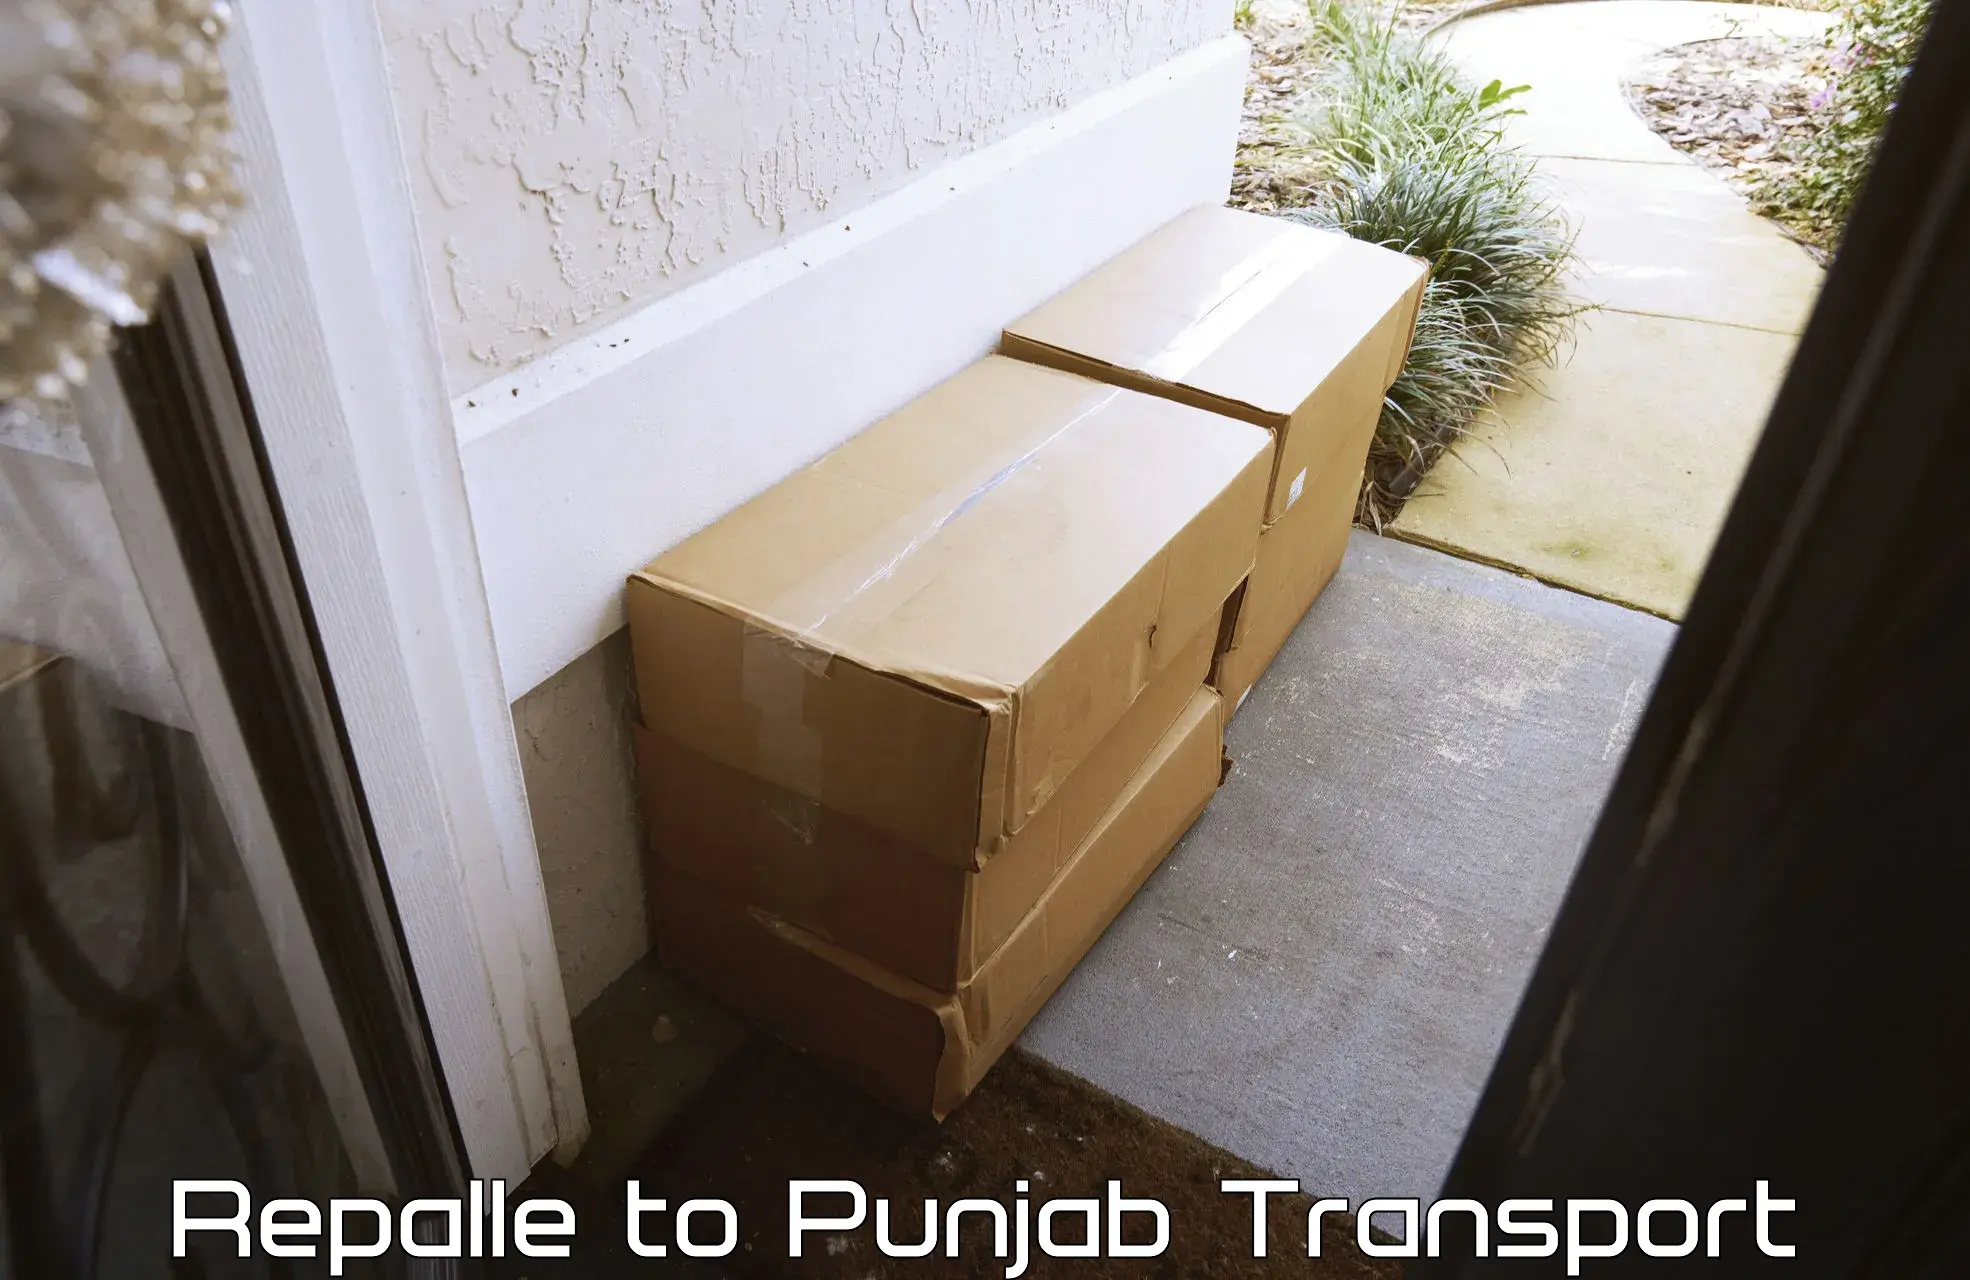 Door to door transport services Repalle to Punjab